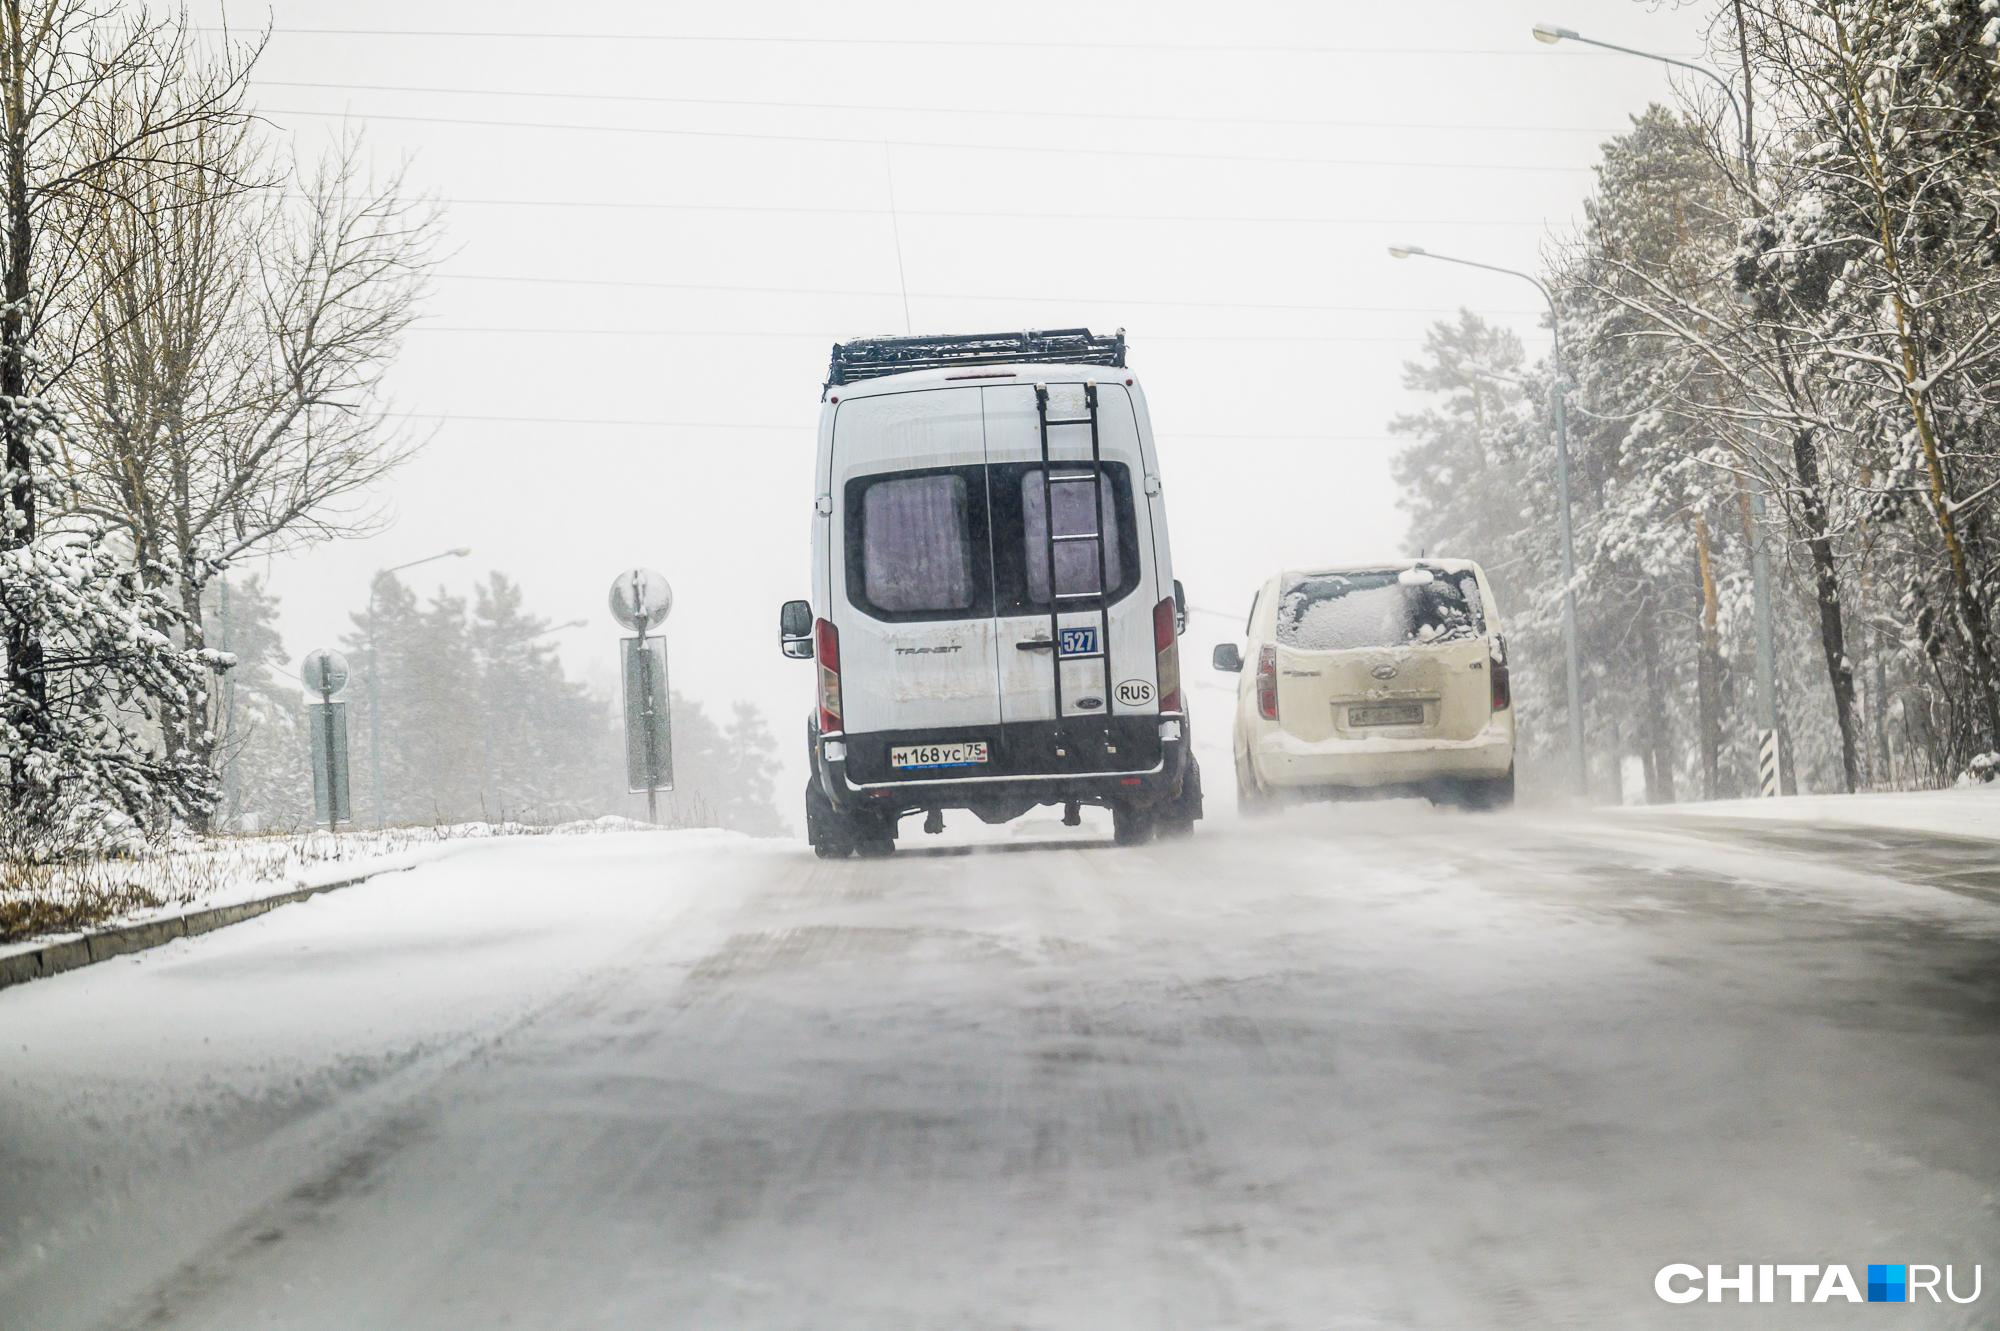 Жители пригорода Читы жалуются на пропажу единственного автобуса